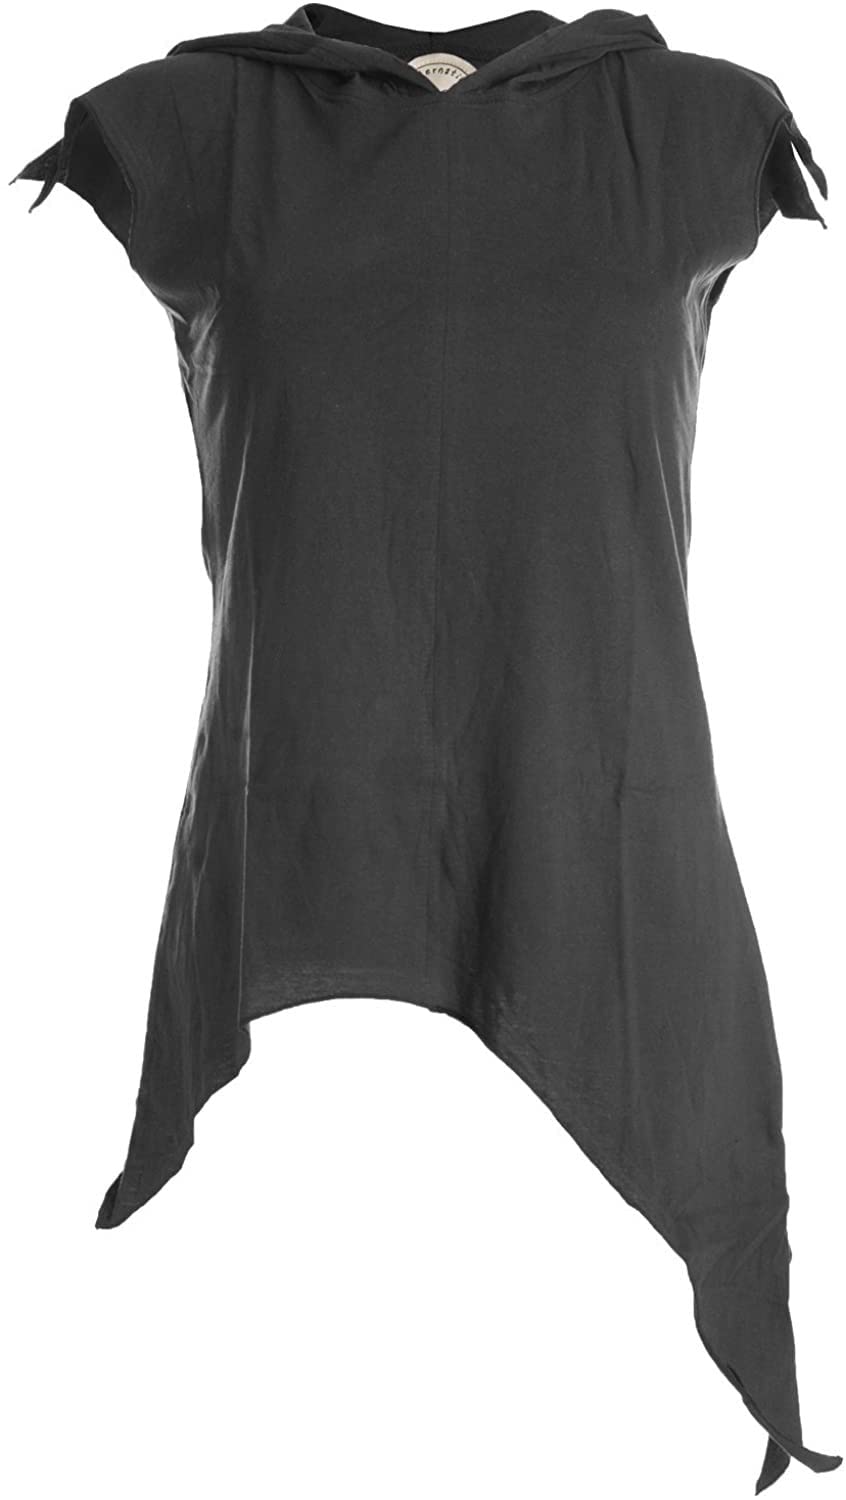 Vishes - Alternative Bekleidung - Zipfelshirt mit Zipfelkapuze aus Baumwolle schwarz 36